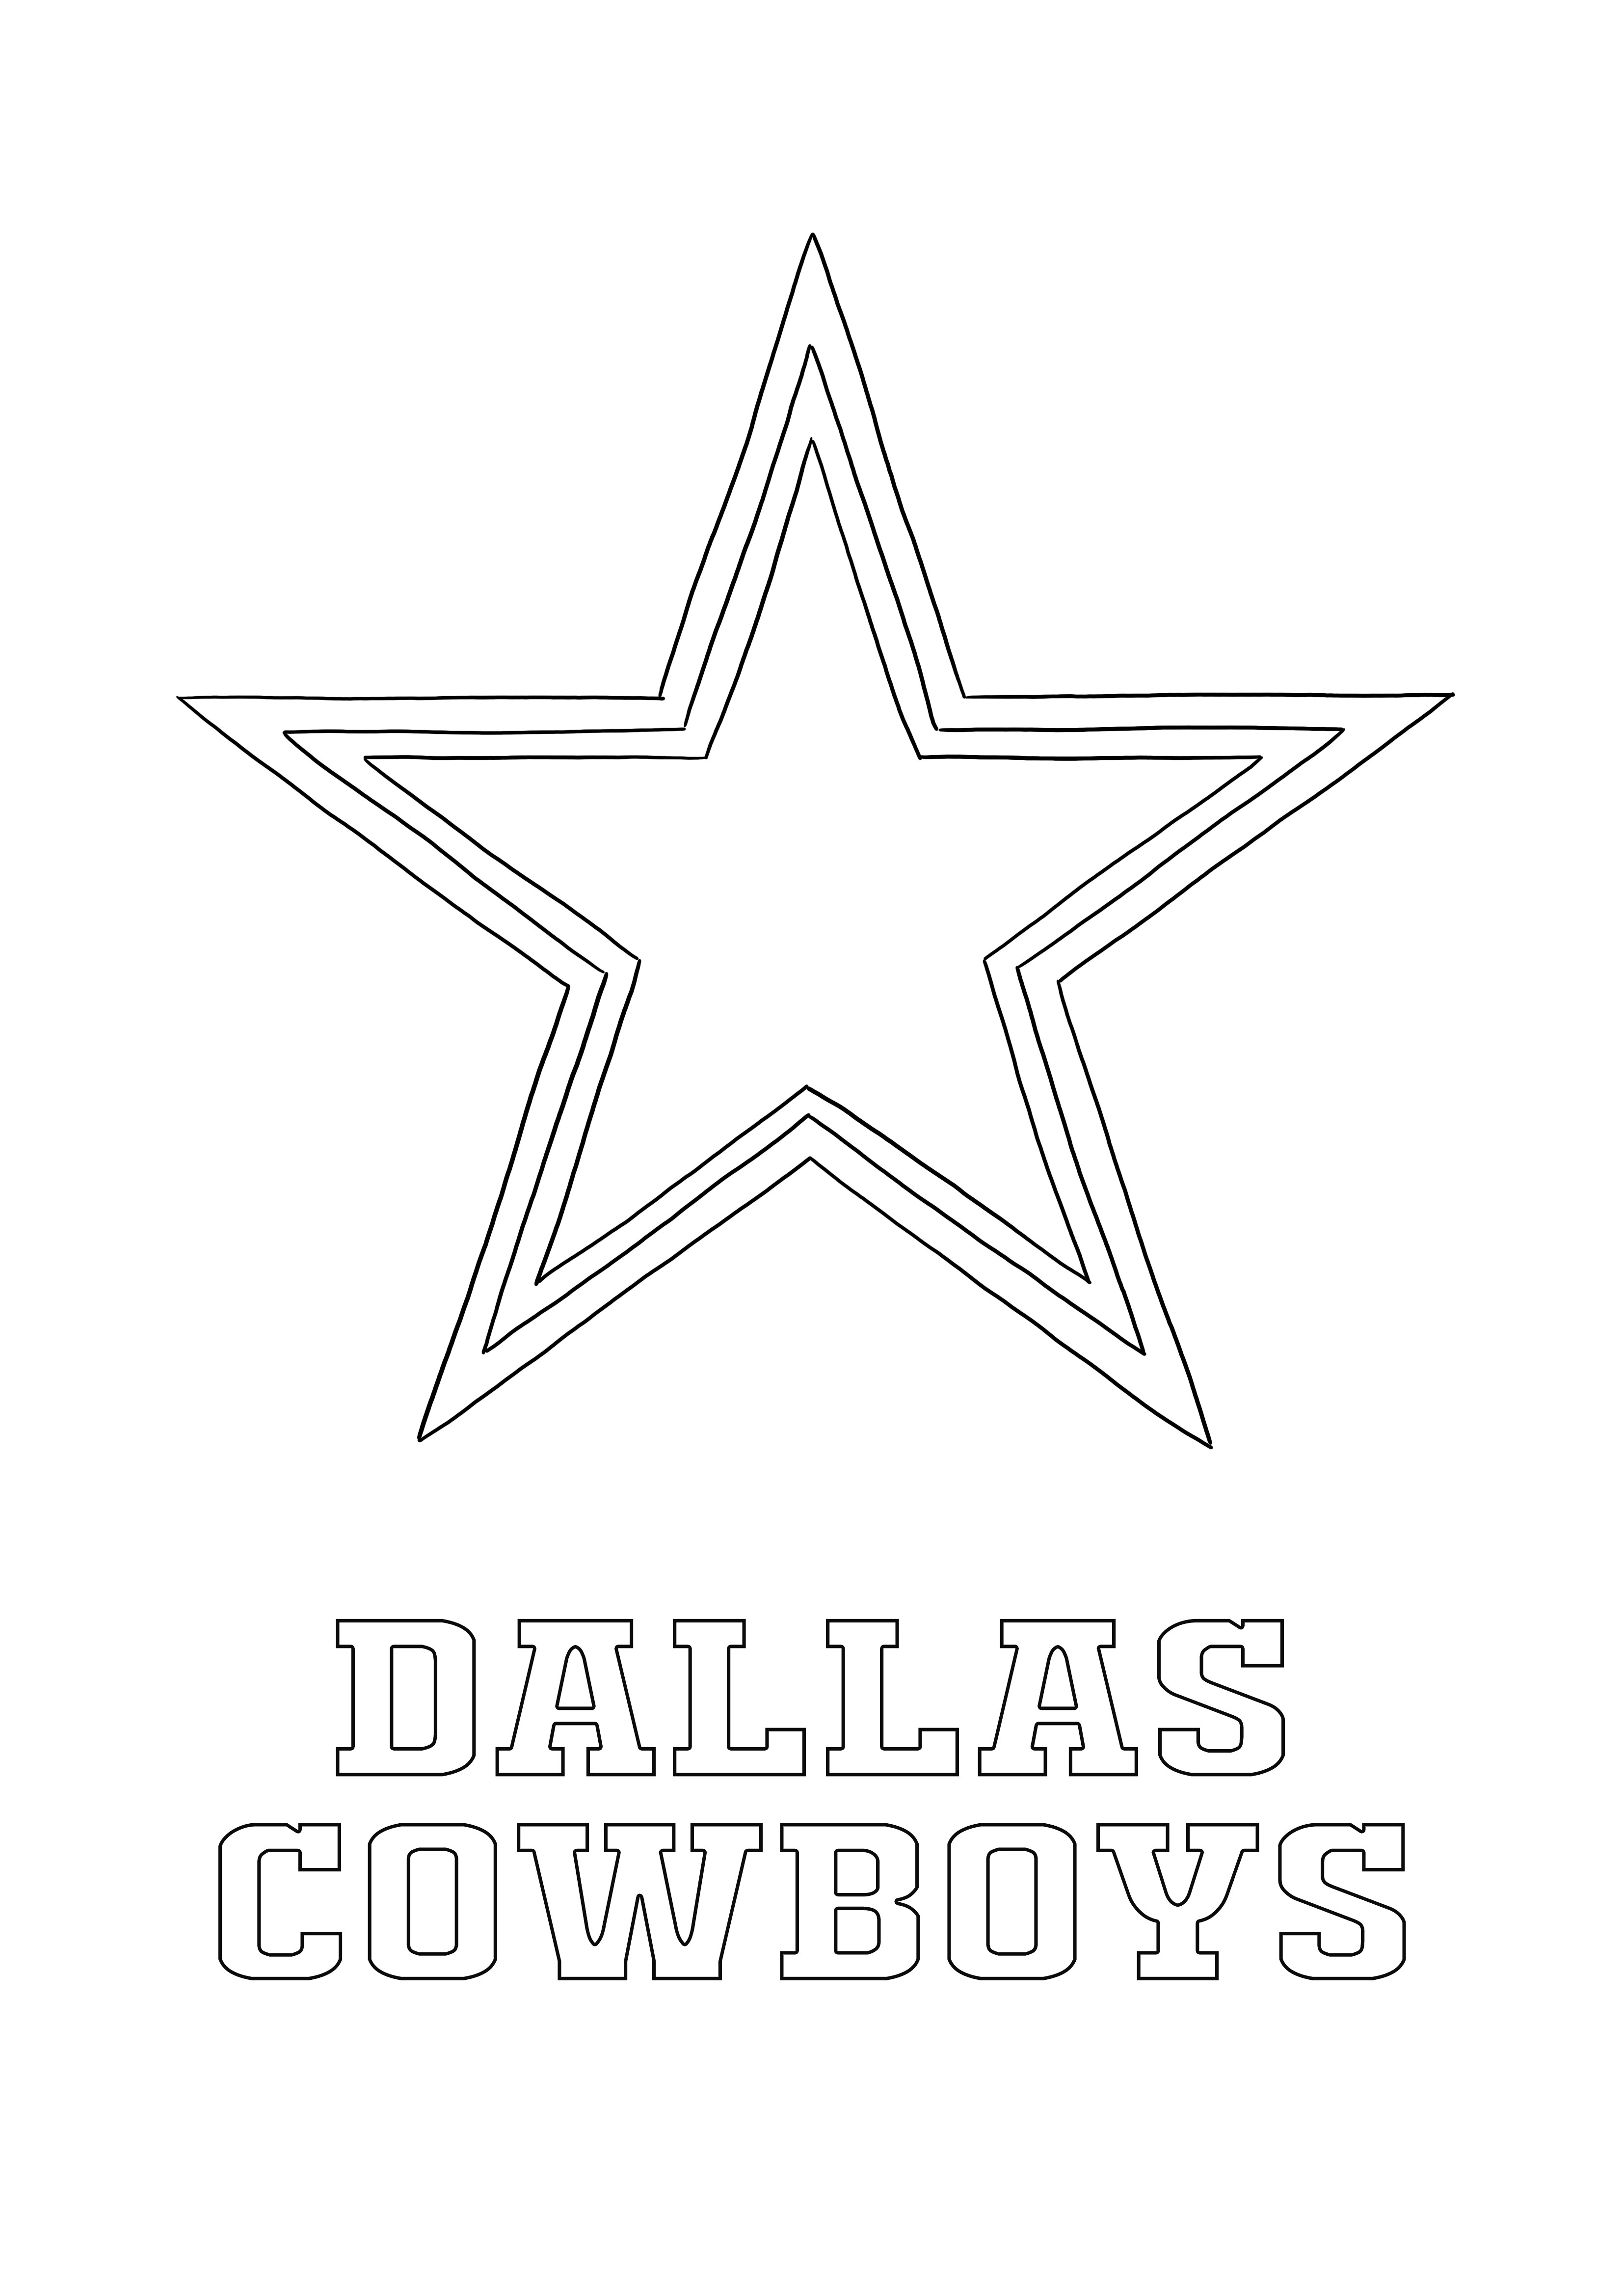 Logo Dallas Cowboys za darmo do kolorowania i drukowania dla wszystkich fanów sportu